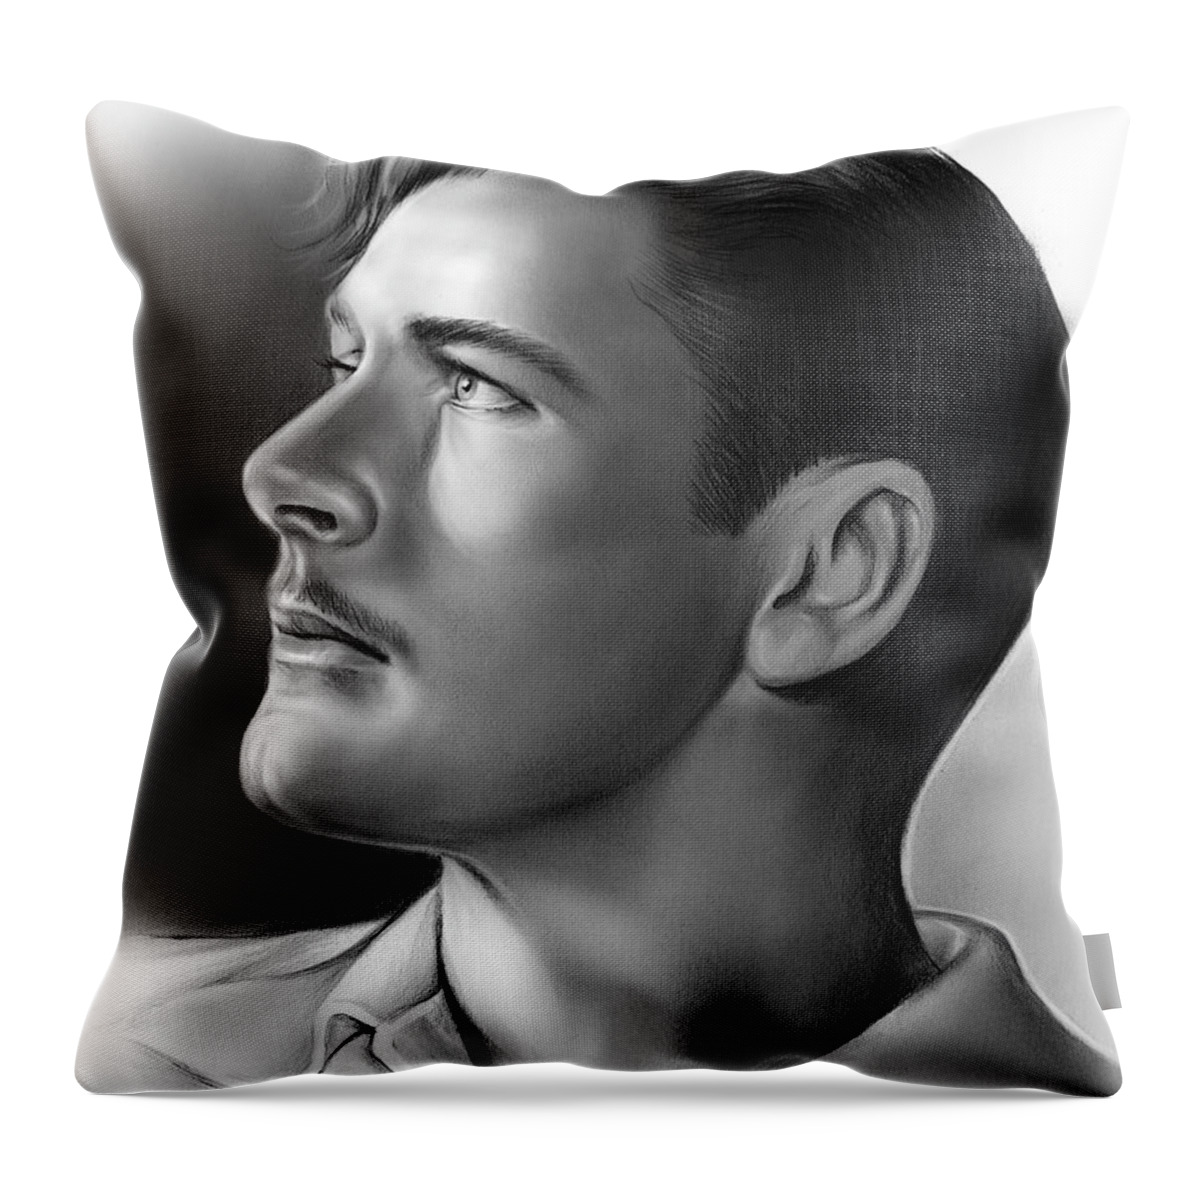 Errol Flynn Throw Pillow featuring the drawing Errol Flynn by Greg Joens